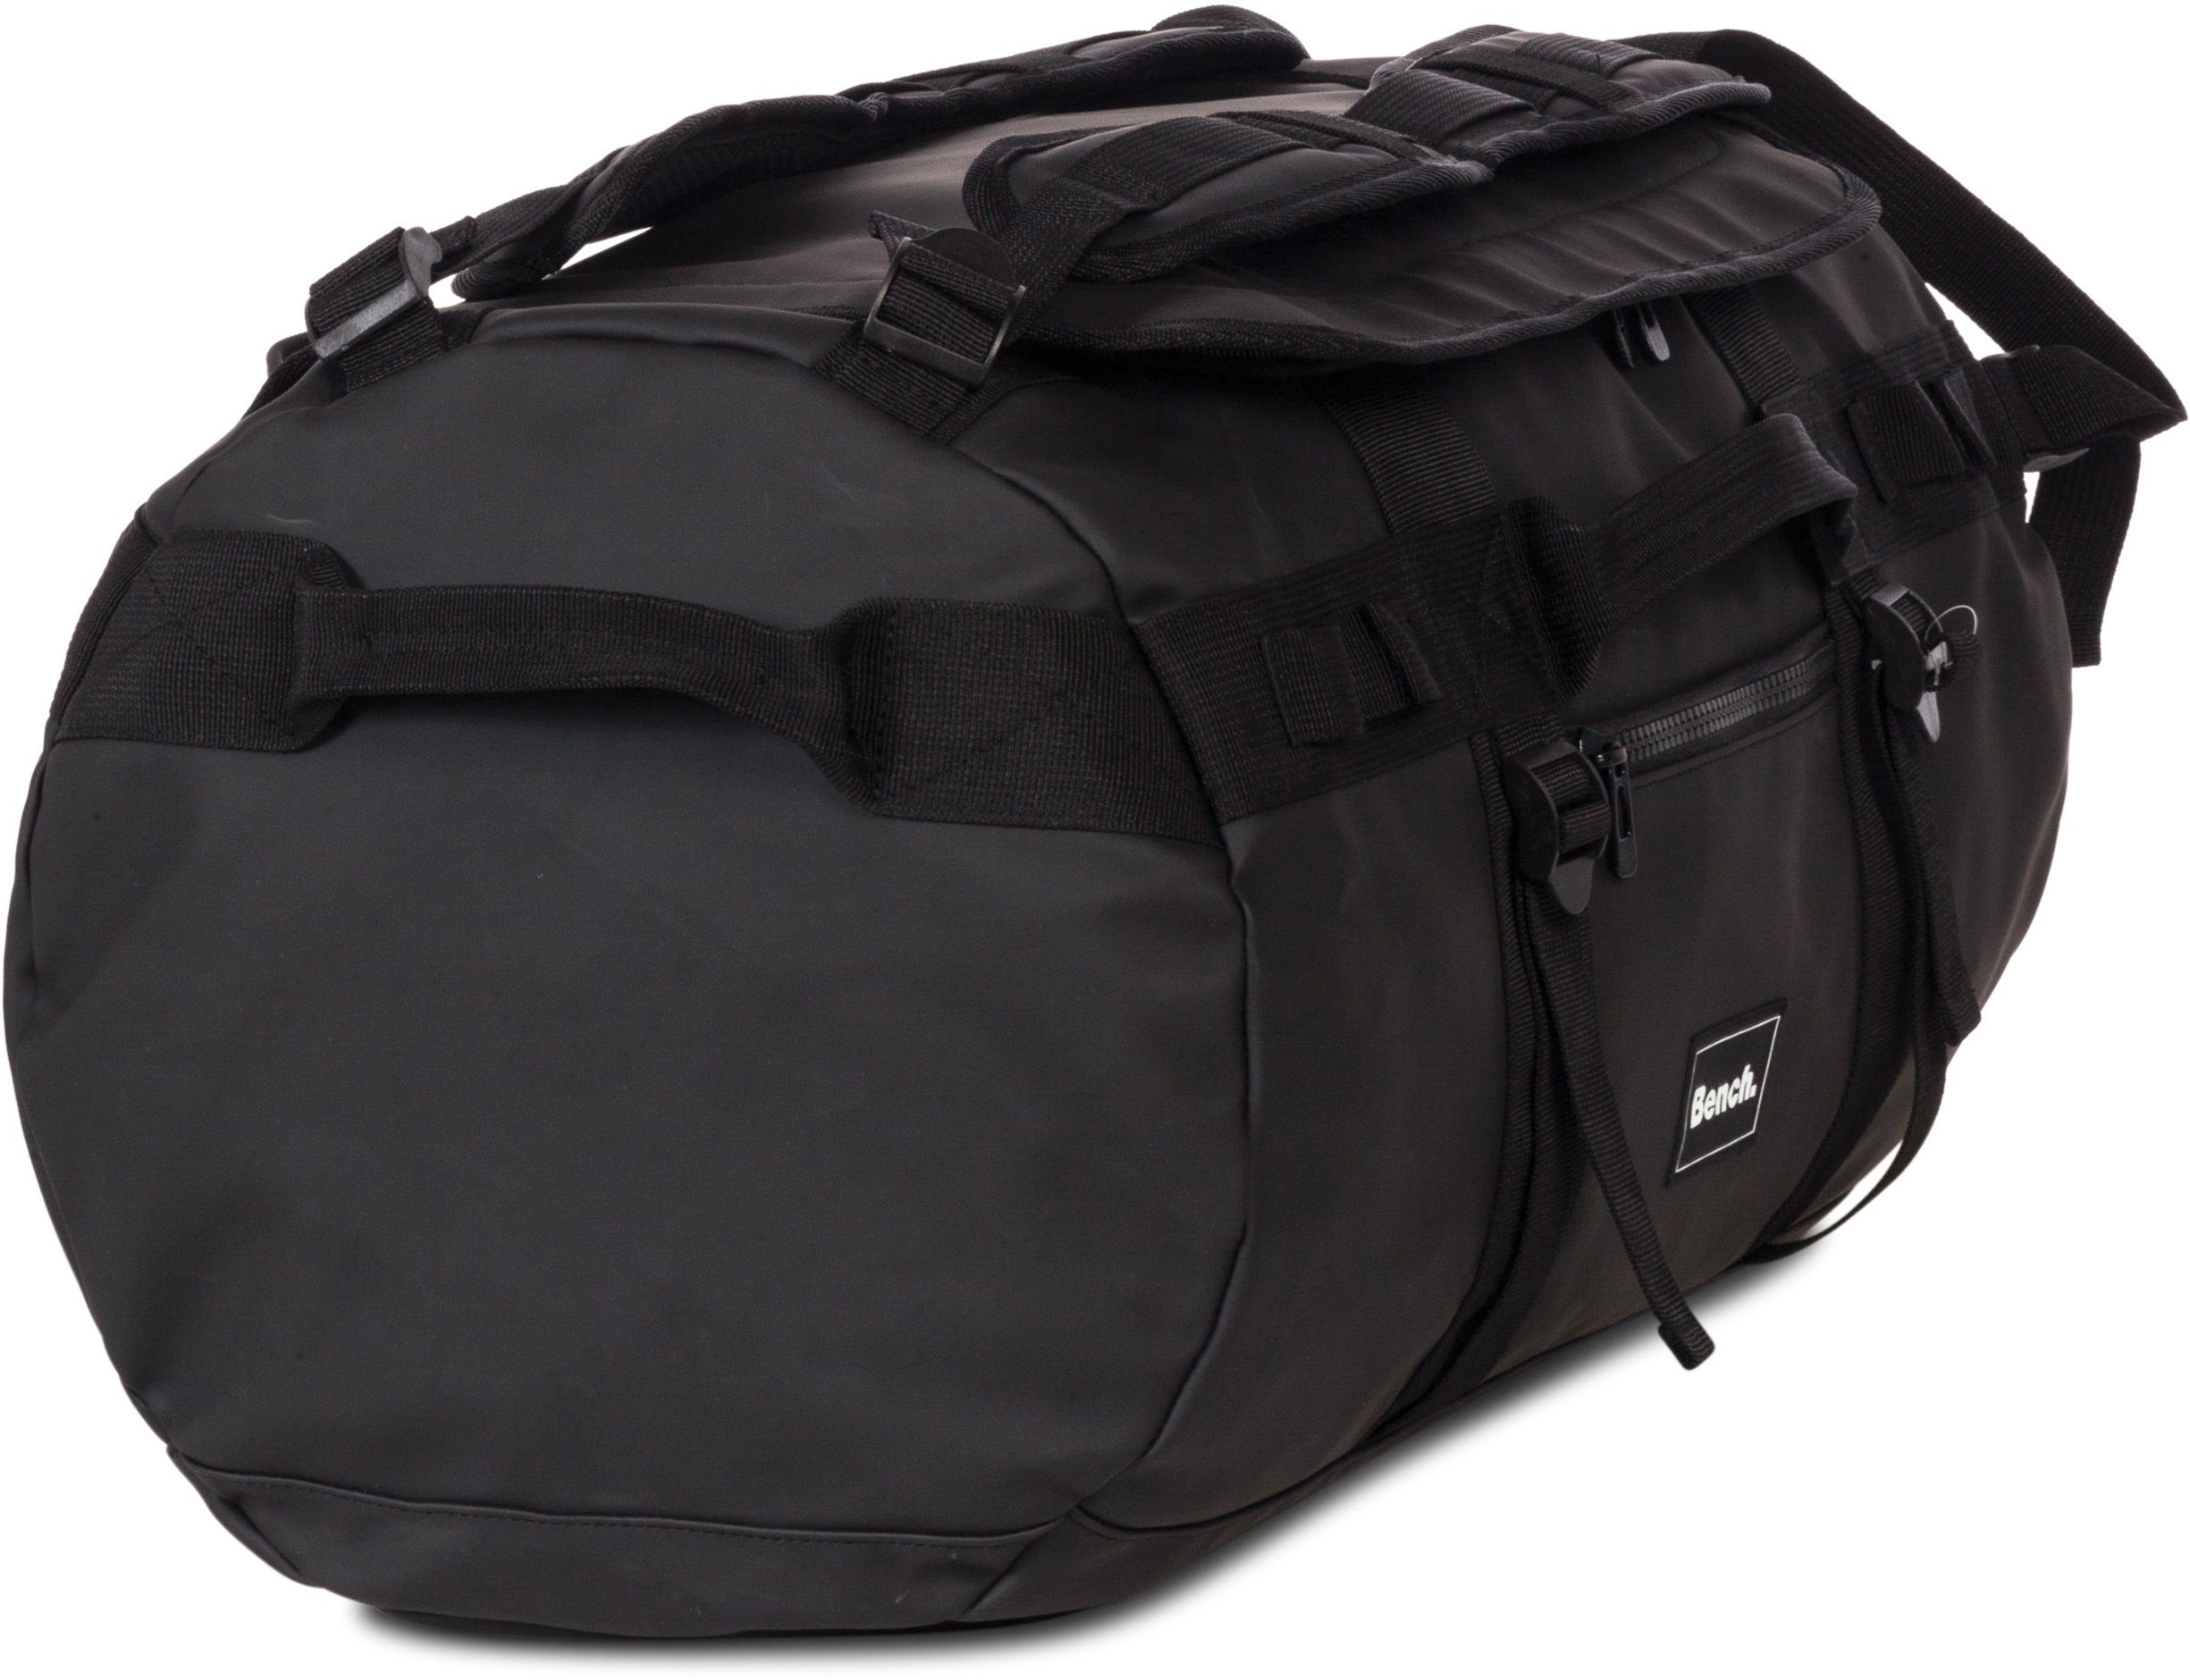 wasserabweisendem Reisetasche aus Hydro, Material Rucksackfunktion; mit schwarz, Bench.